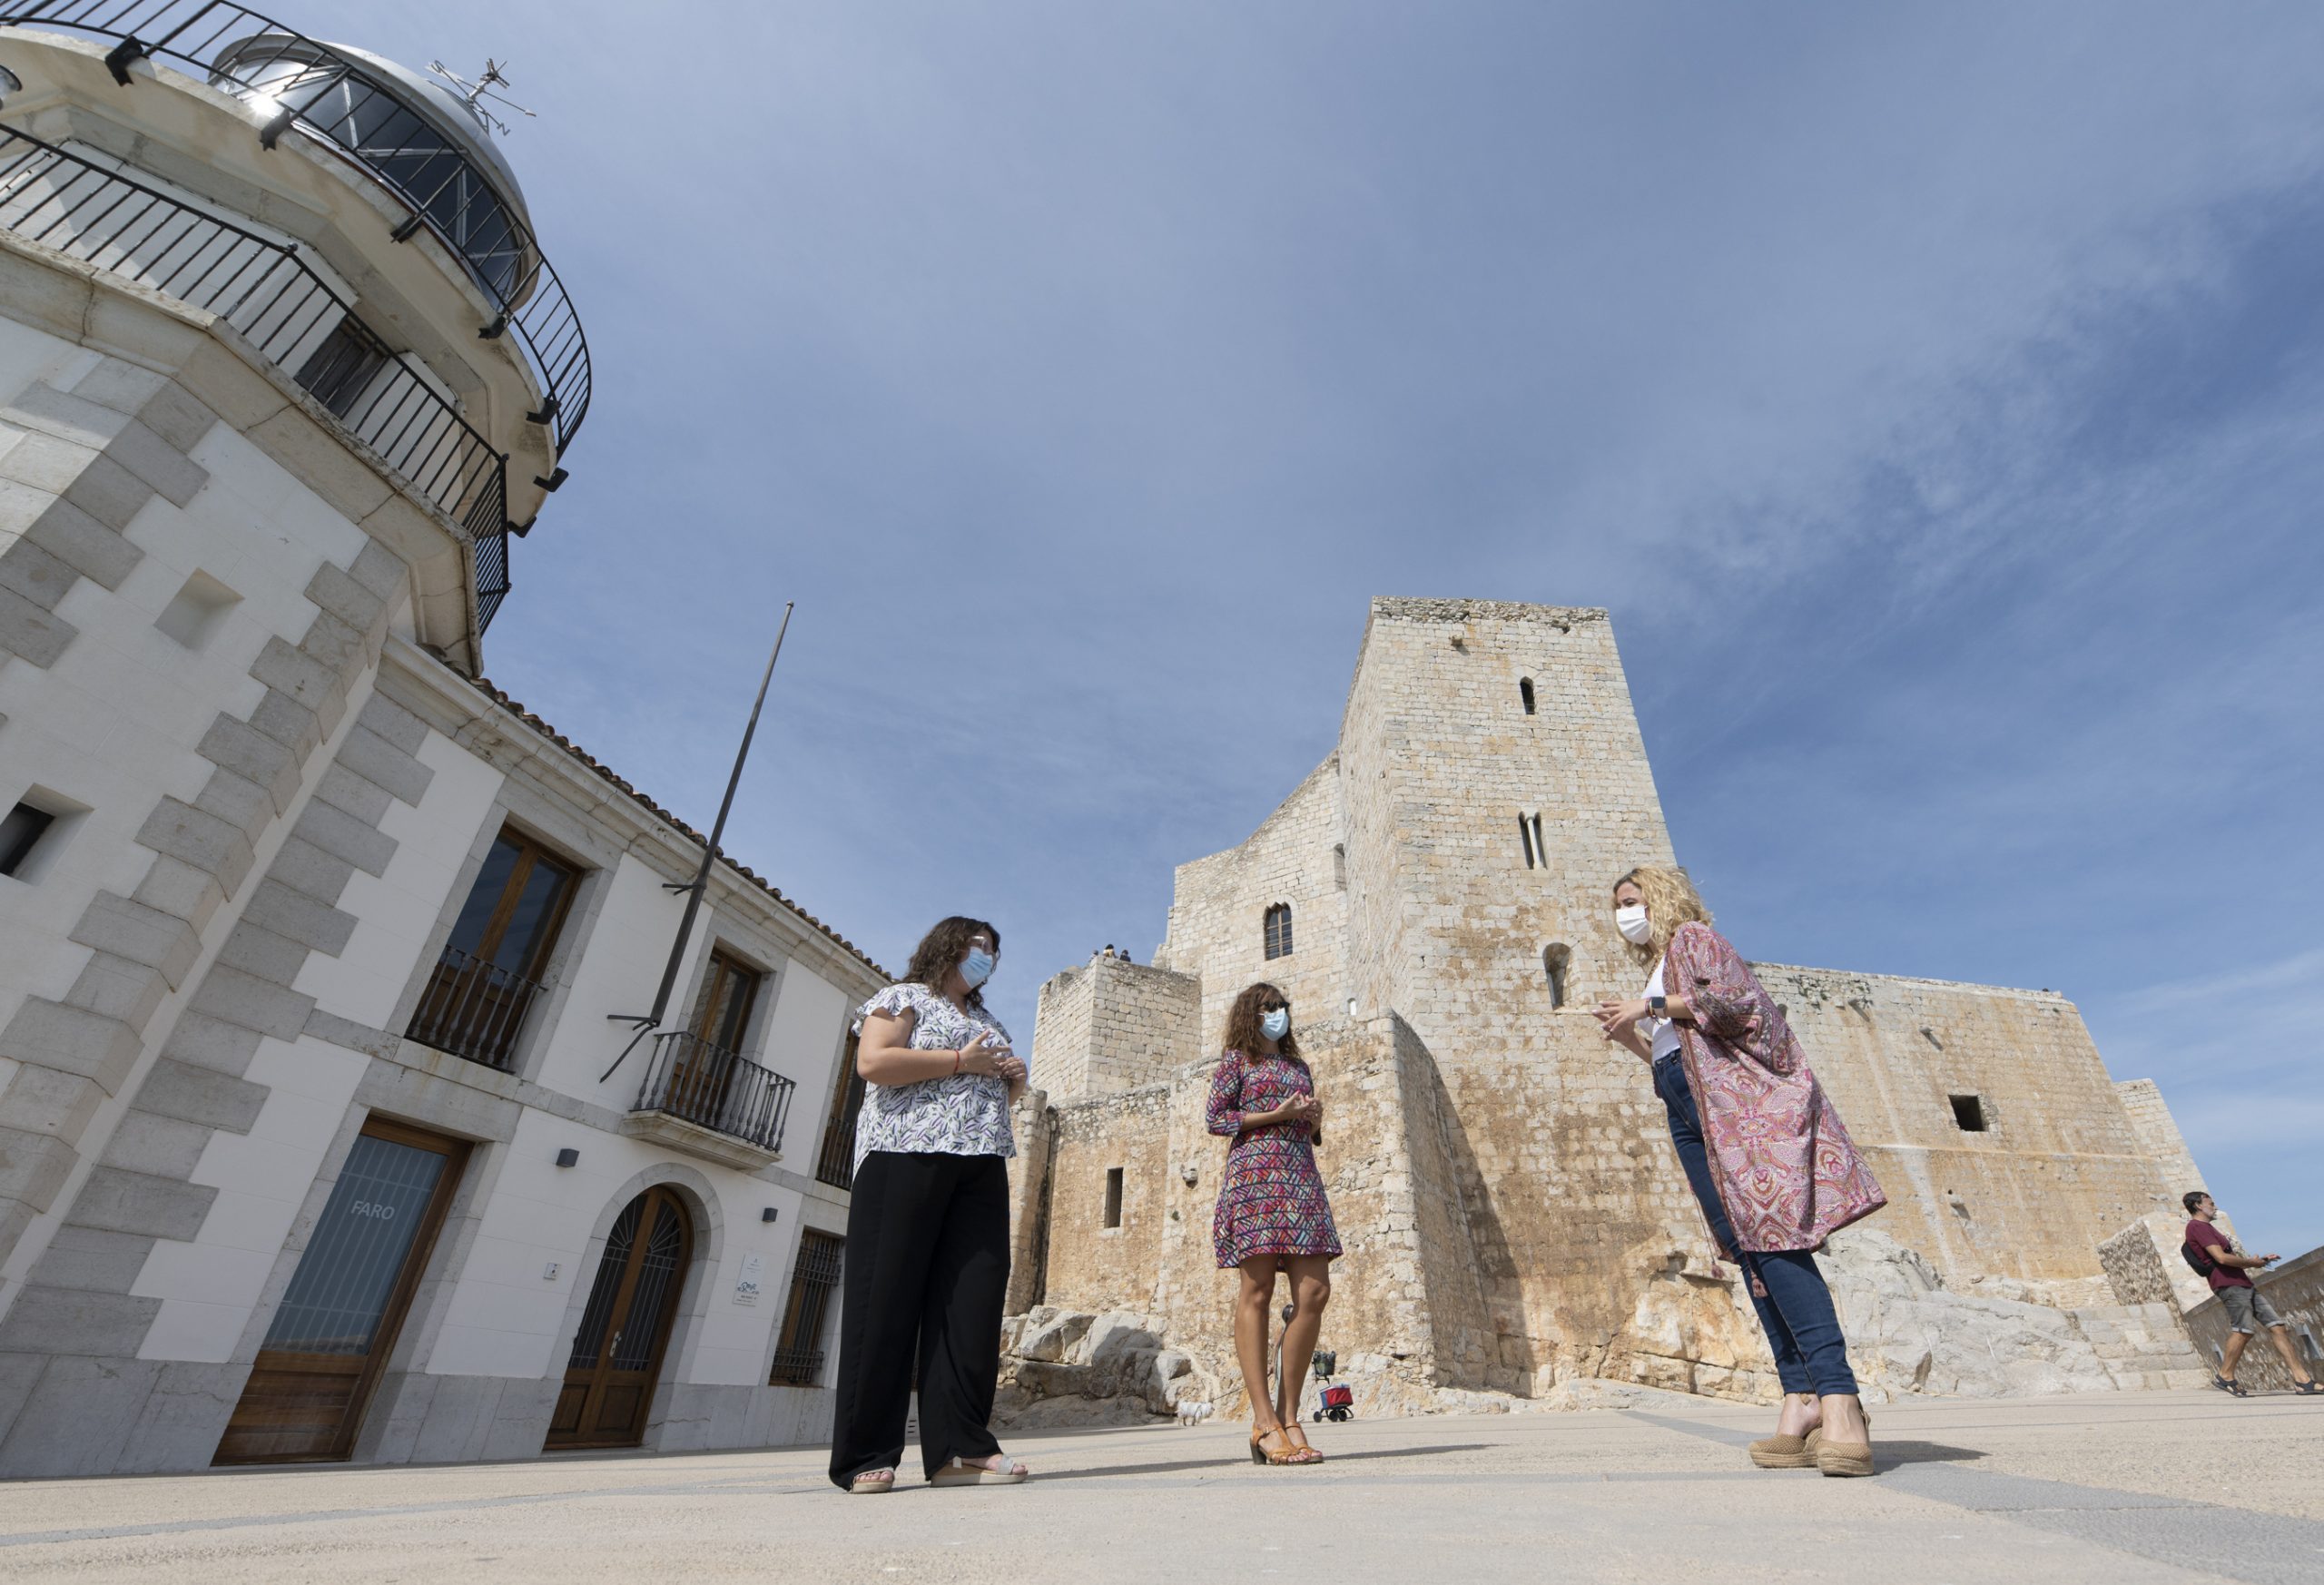 La Diputación de Castellón aprovechará la fuerza del castillo de Peñíscola para presentar los atractivos turísticos de la provincia a los visitantes